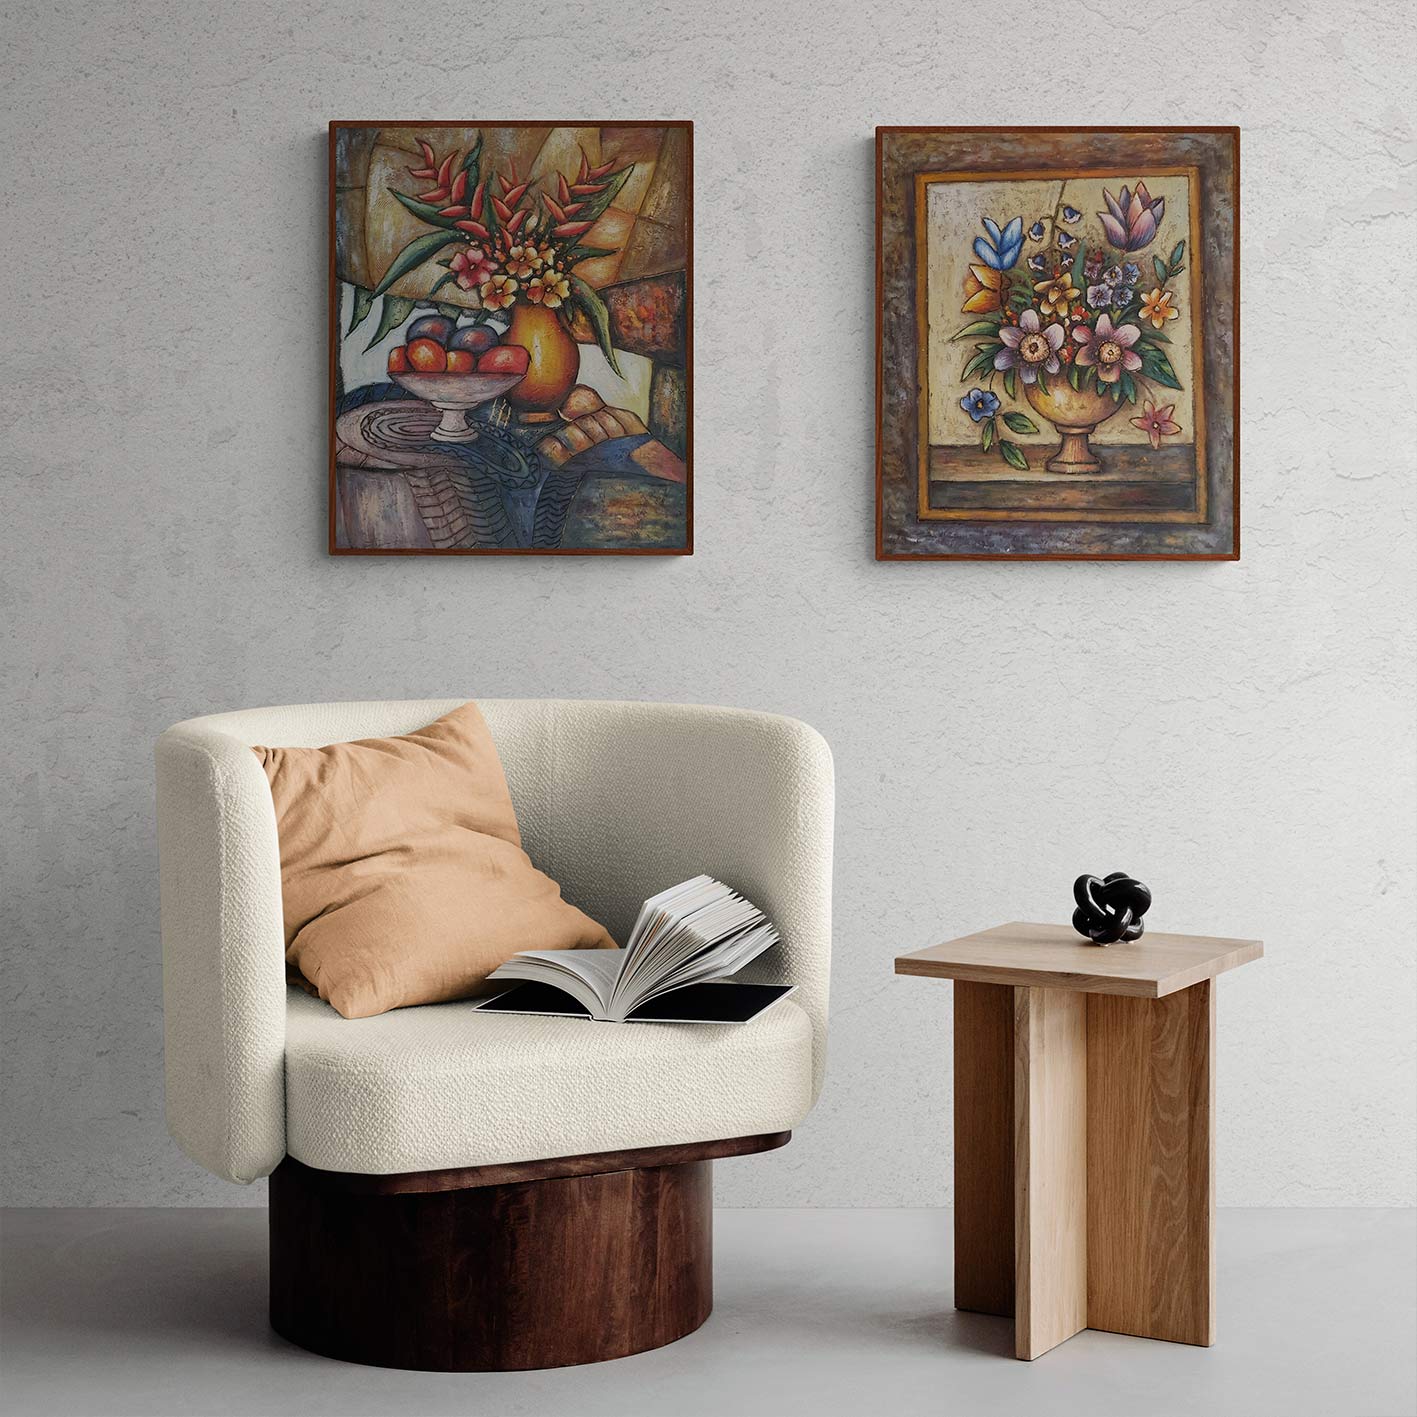 Stern-Stillleben-Diptychon-Gemälde 50x60 cm [2 Stück]